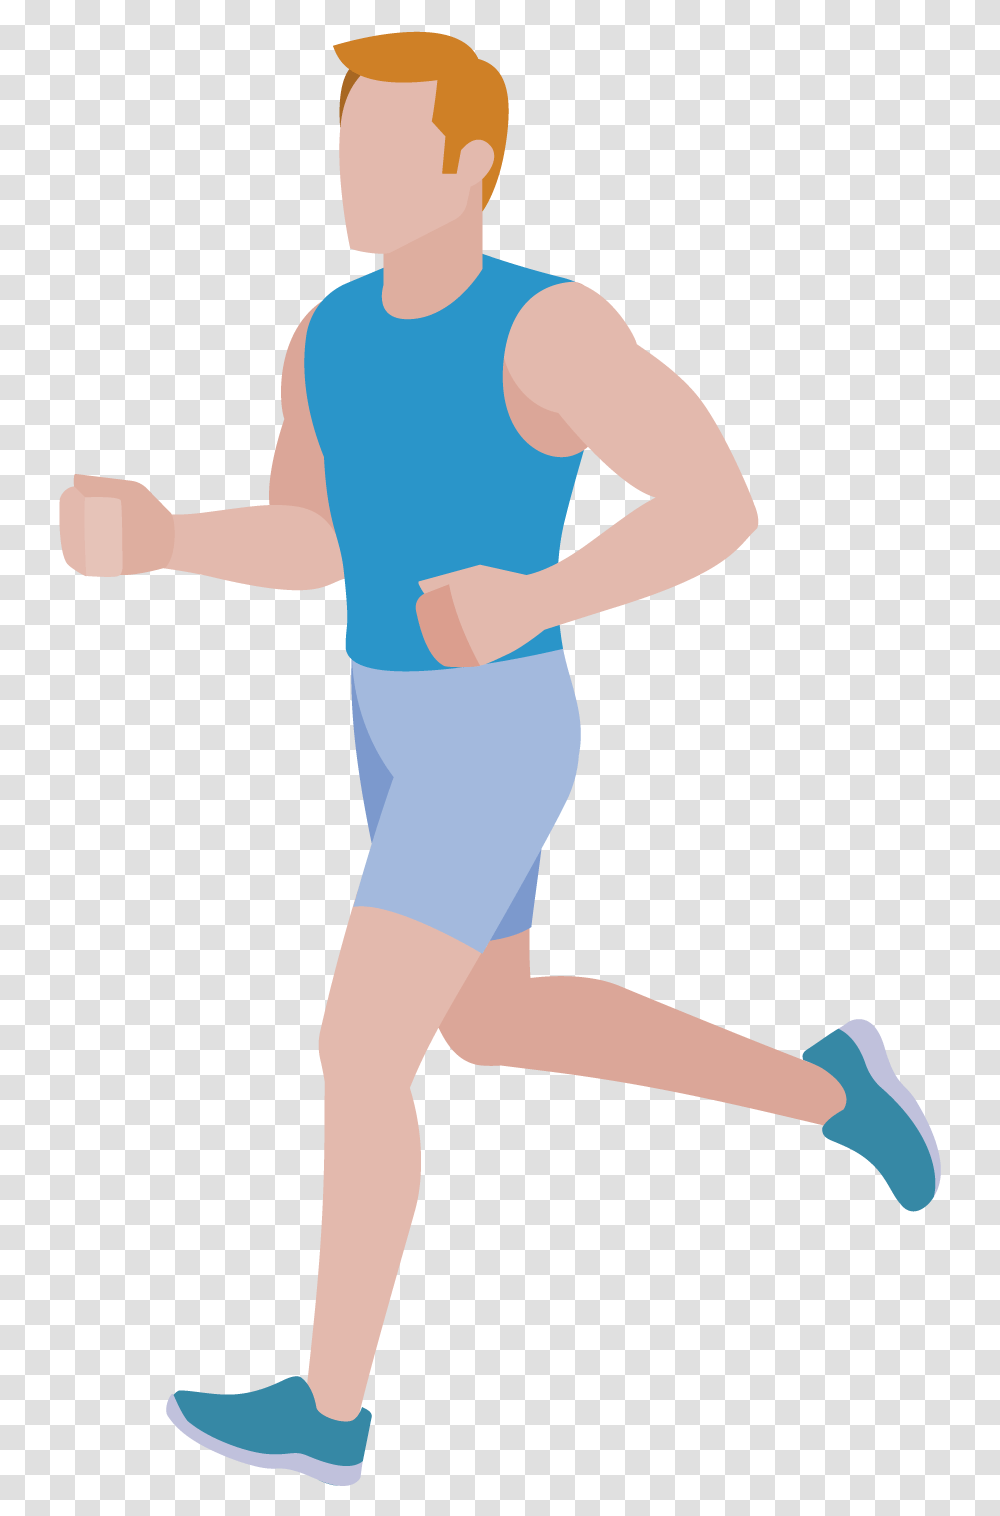 Running Legs Cartoon Man Running, Standing, Person, Human, Axe Transparent Png